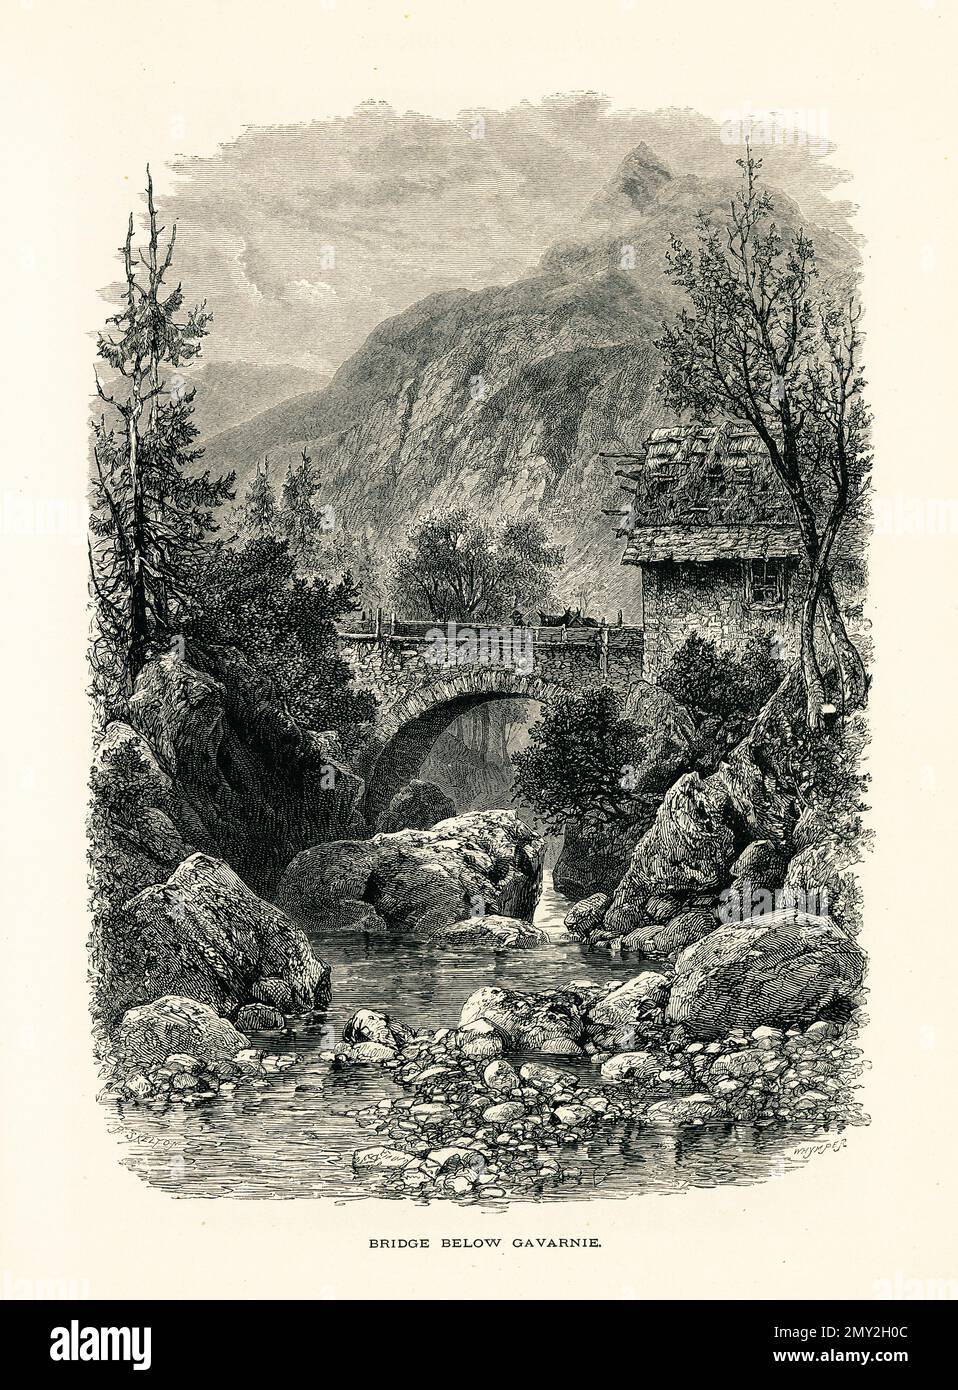 Antica illustrazione di un ponte sotto Cirque de Gavarnie nei Pirenei centrali, Francia. Incisione pubblicata in picturesque Europe, Vol. III (Cassel Foto Stock